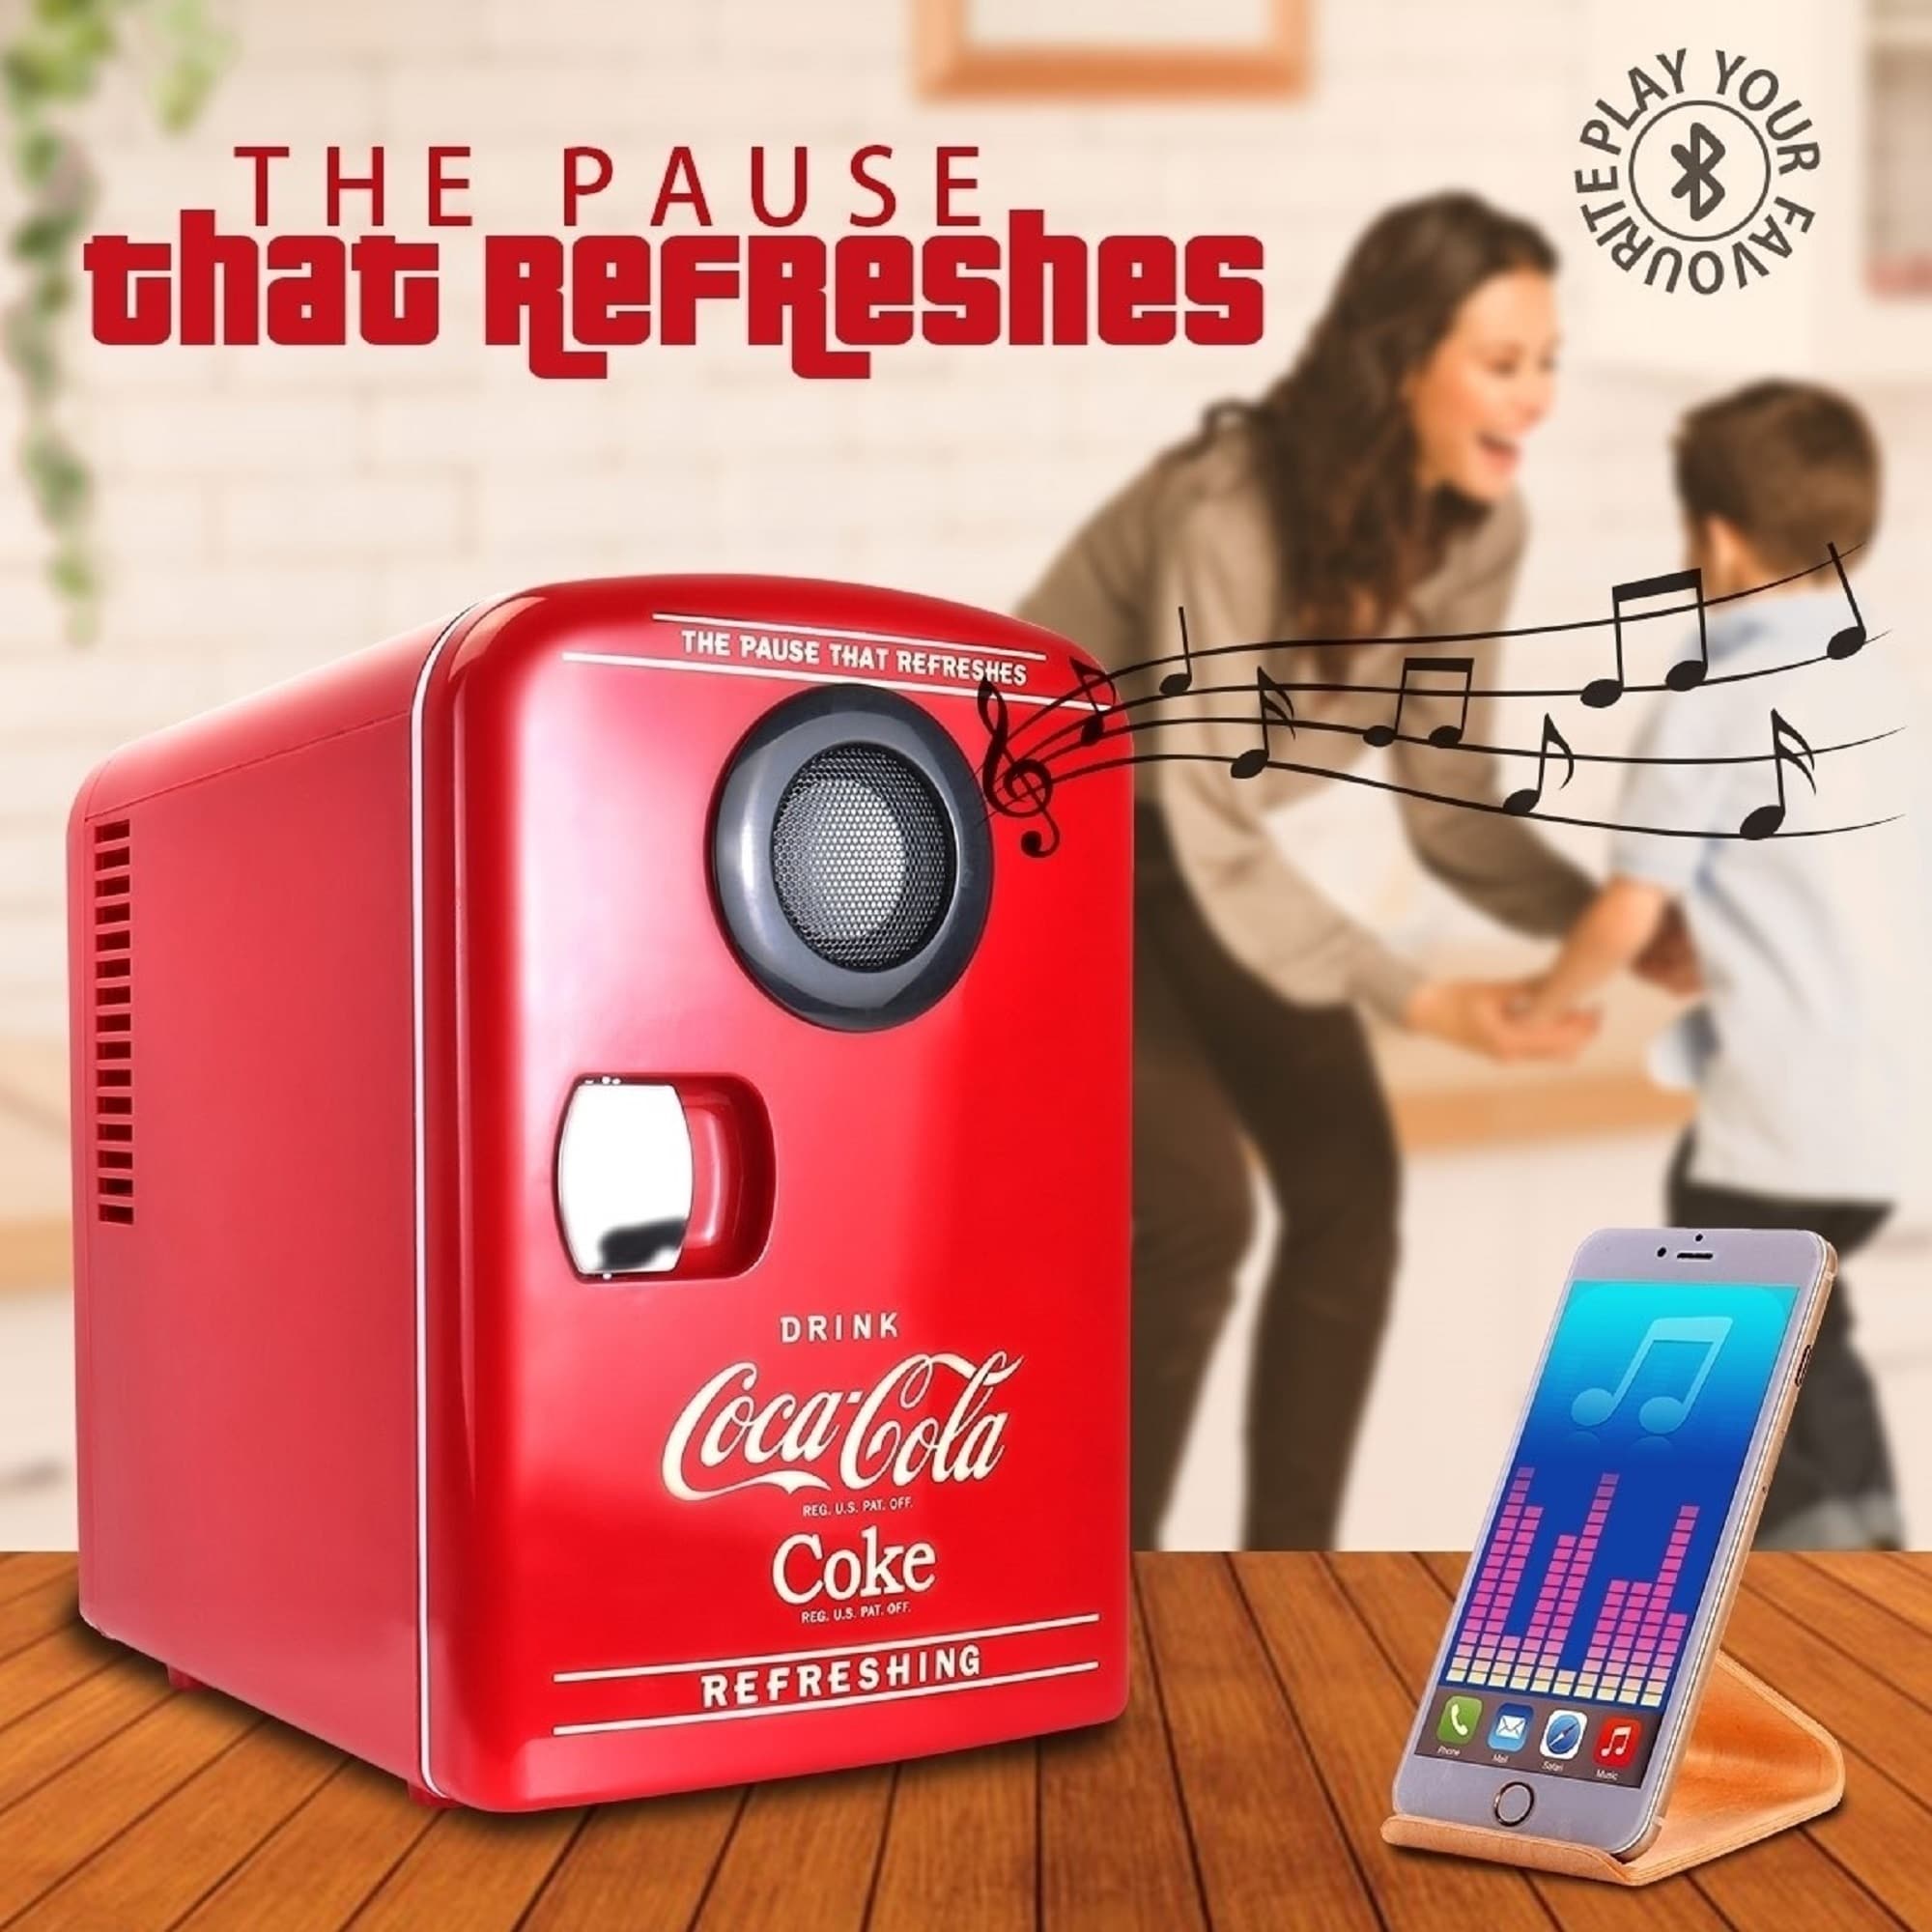 Coca-Cola KWC-4 Red Portable Mini Cooler